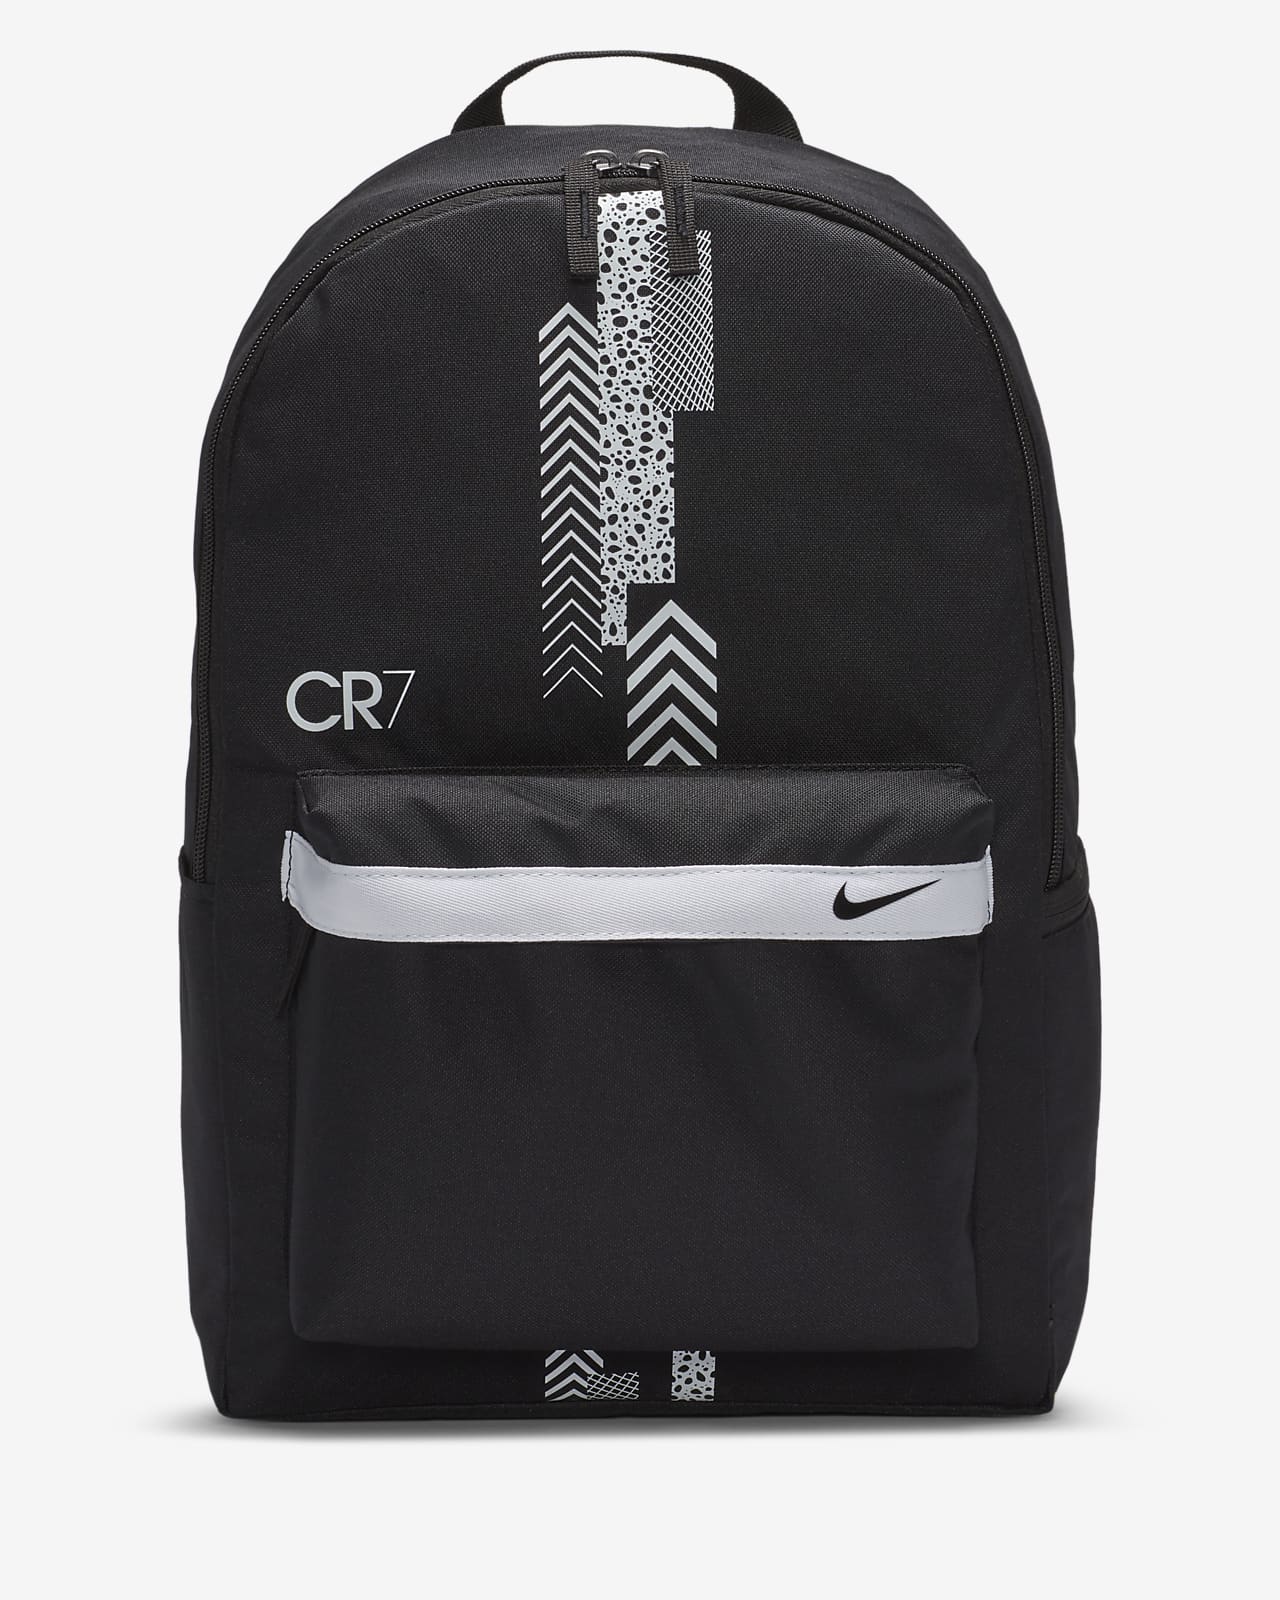 CR7 Kids' Football Backpack. Nike ID